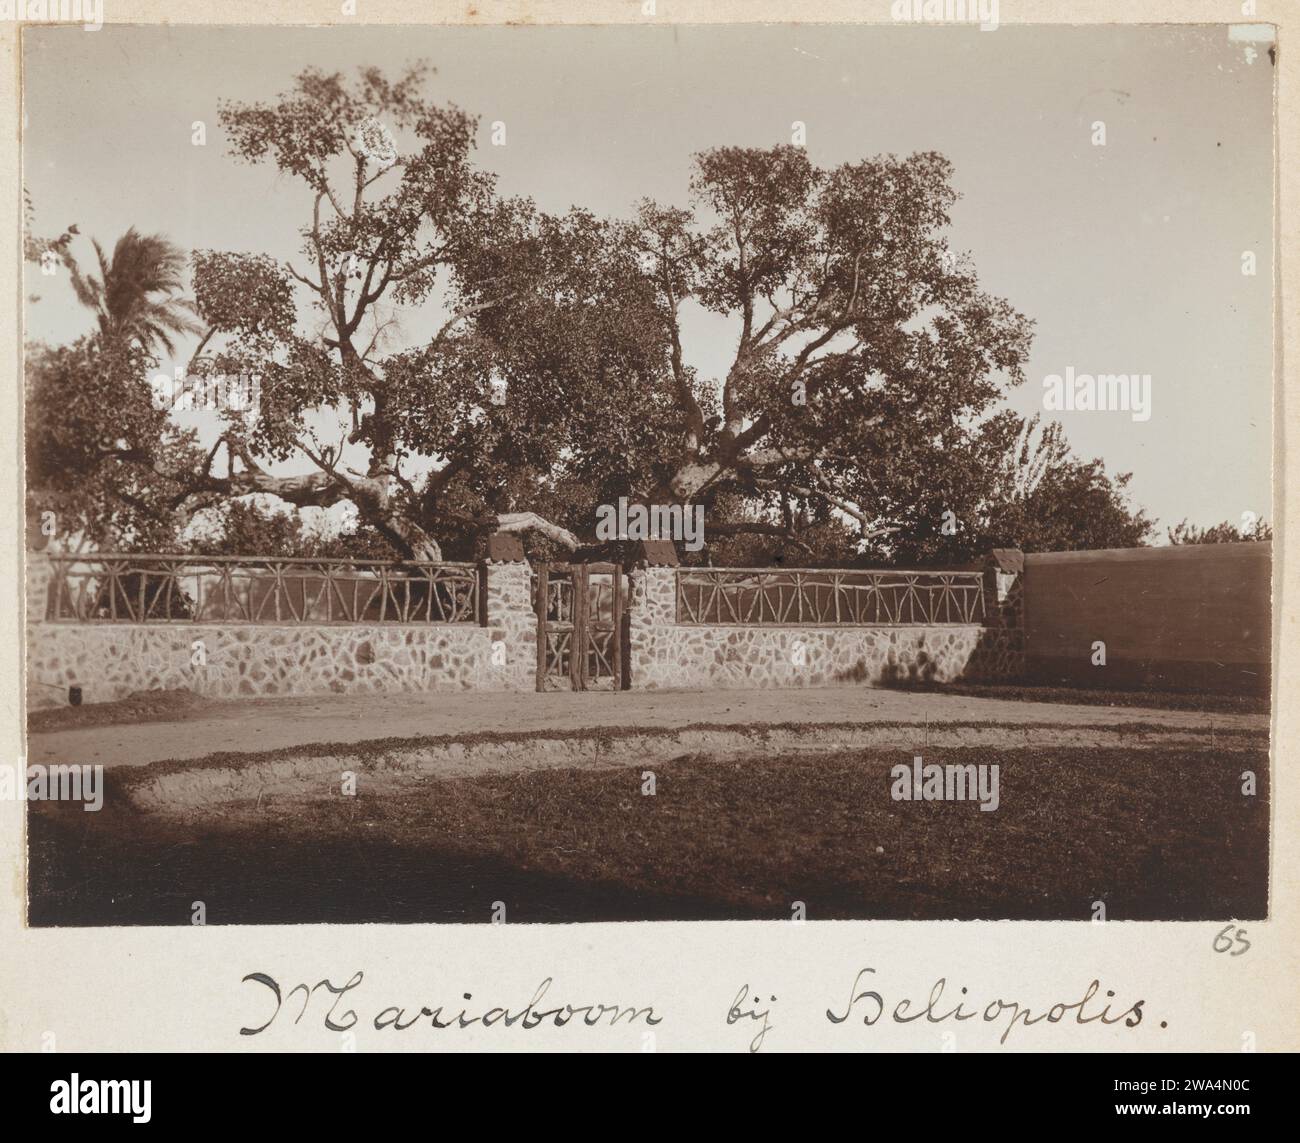 Mariaboom im ehemaligen Heliopolis (heute El Matareya) in Kairo, 1898 fotografieren Cairo baryta Papierbäume. Öffentlicher Gottesdienst und Liturgie der christlichen Kirchen Kairo Stockfoto